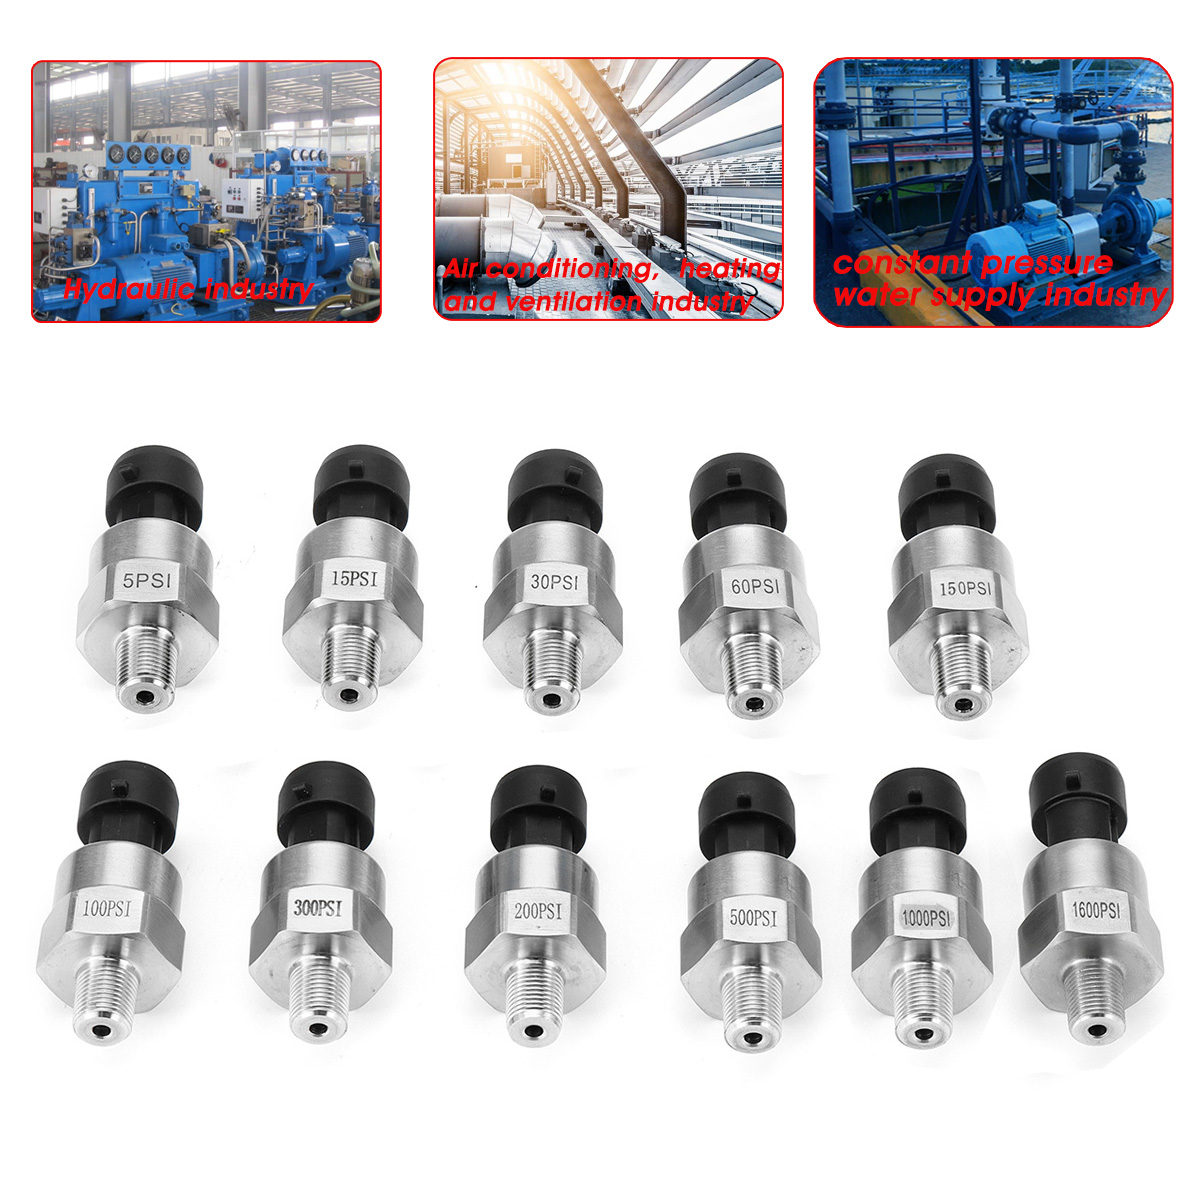 5V 1/8NPT Stainless Steel Fuel Pressure Sensor Transducer Sender For Oil Air Water 5/15/30/60/100/150/200/300/500/1000/1600 Psi